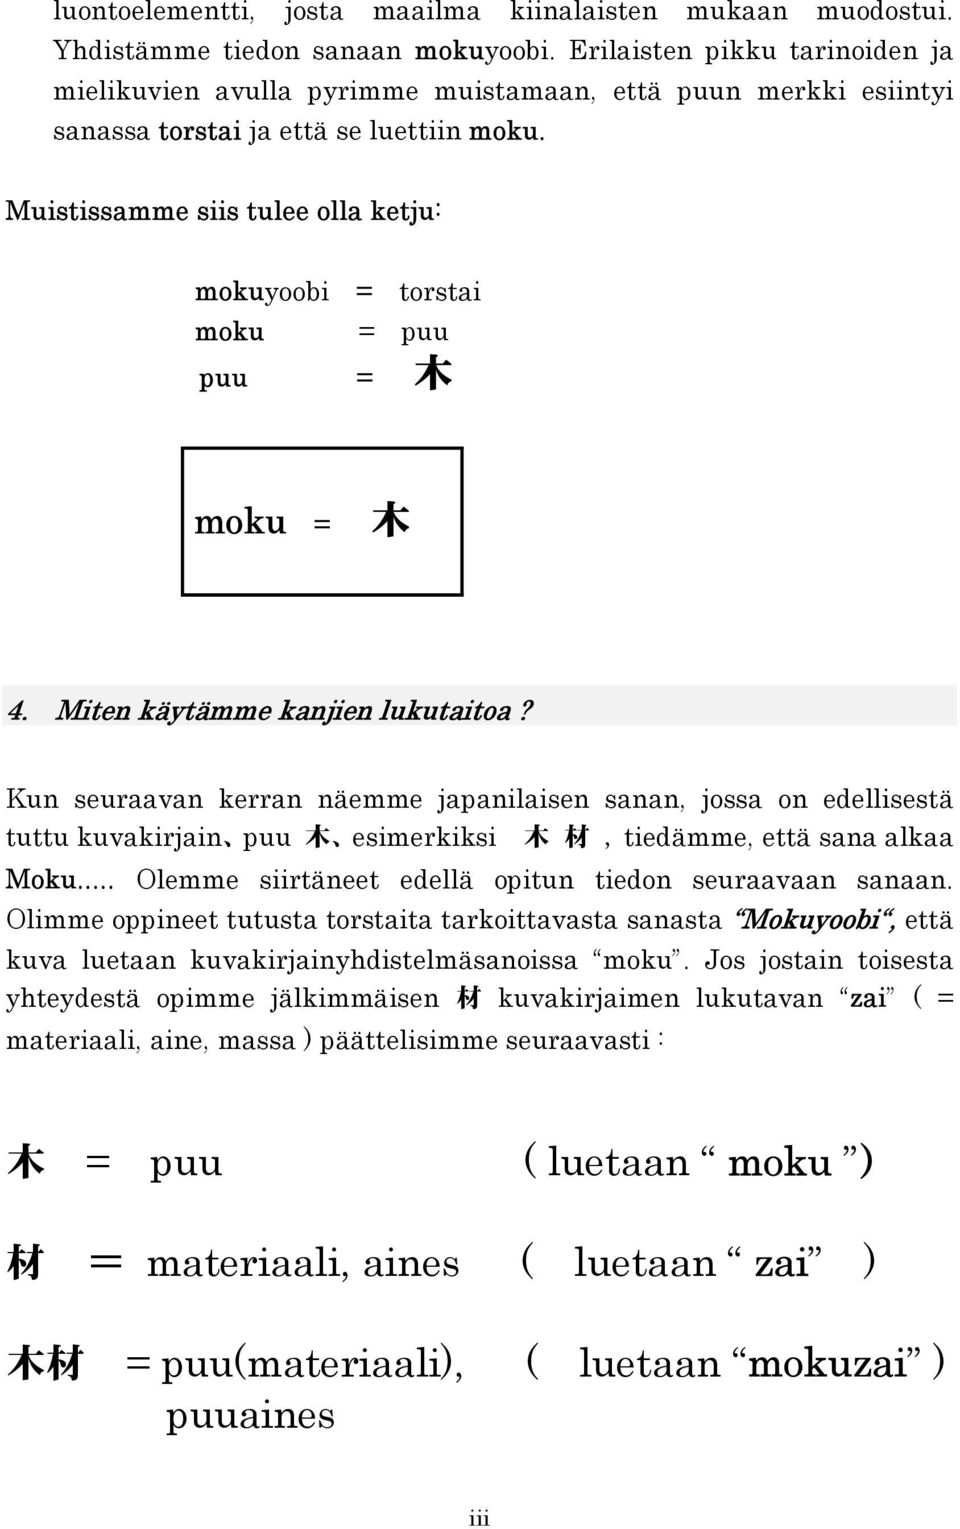 Muistissamme siis tulee olla ketju: mokuyoobi = torstai moku = puu puu = moku = 4. Miten käytämme kanjien lukutaitoa?